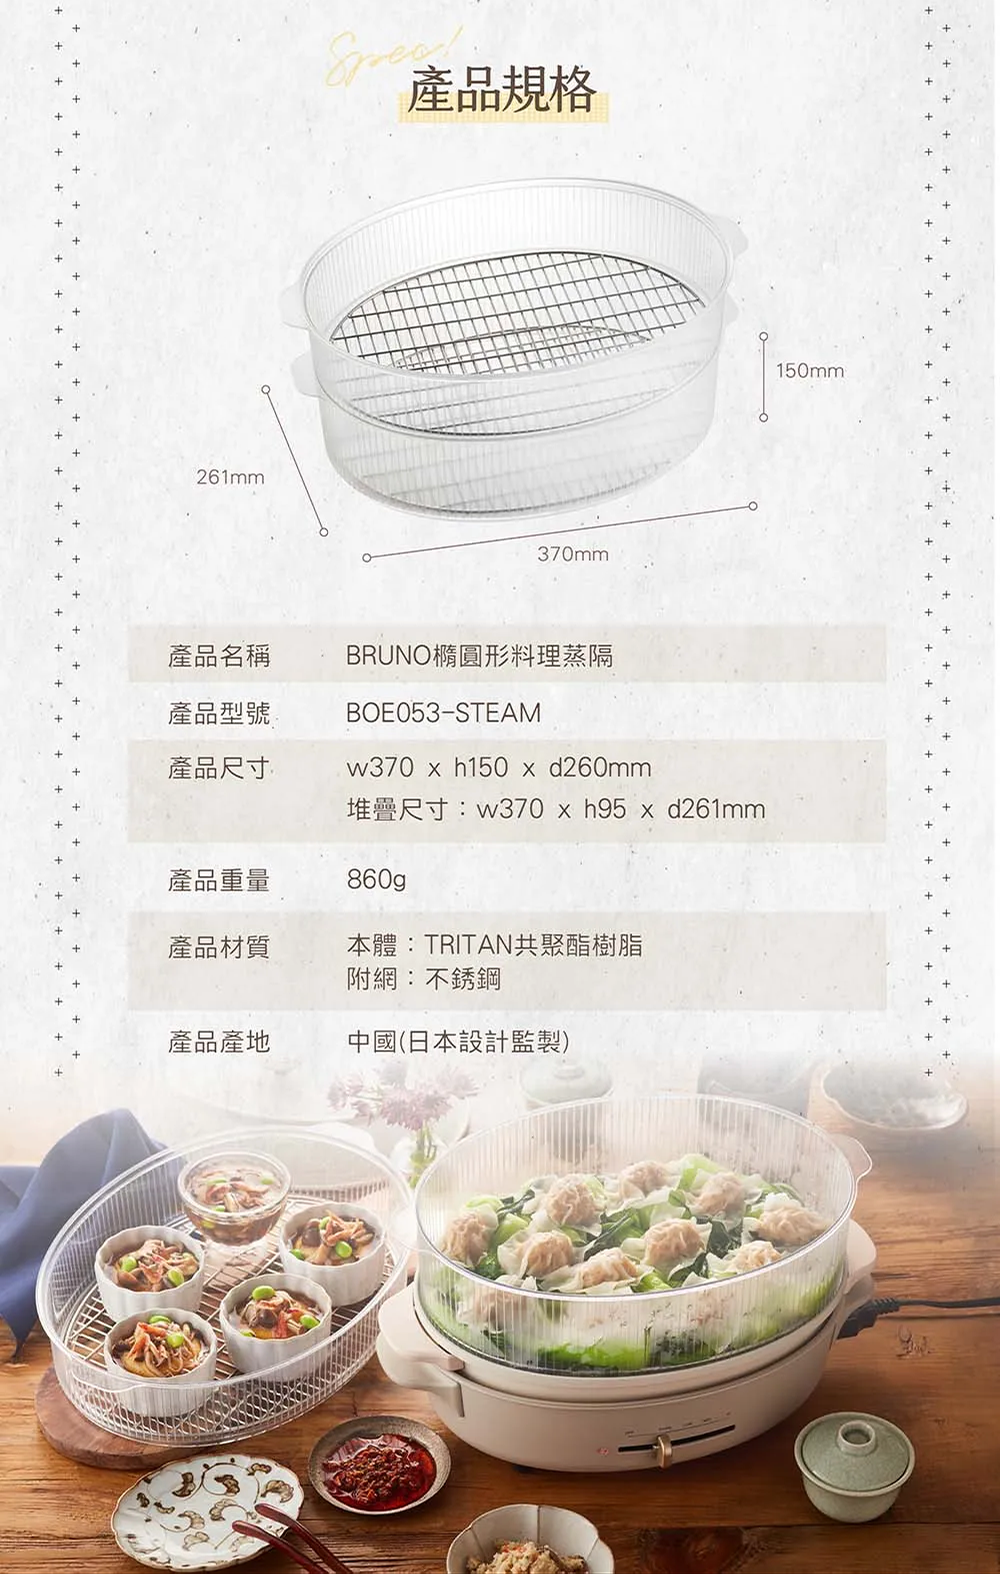 BRUNO 橢圓形料理蒸隔 BOE053-STEAM 產品規格介紹。